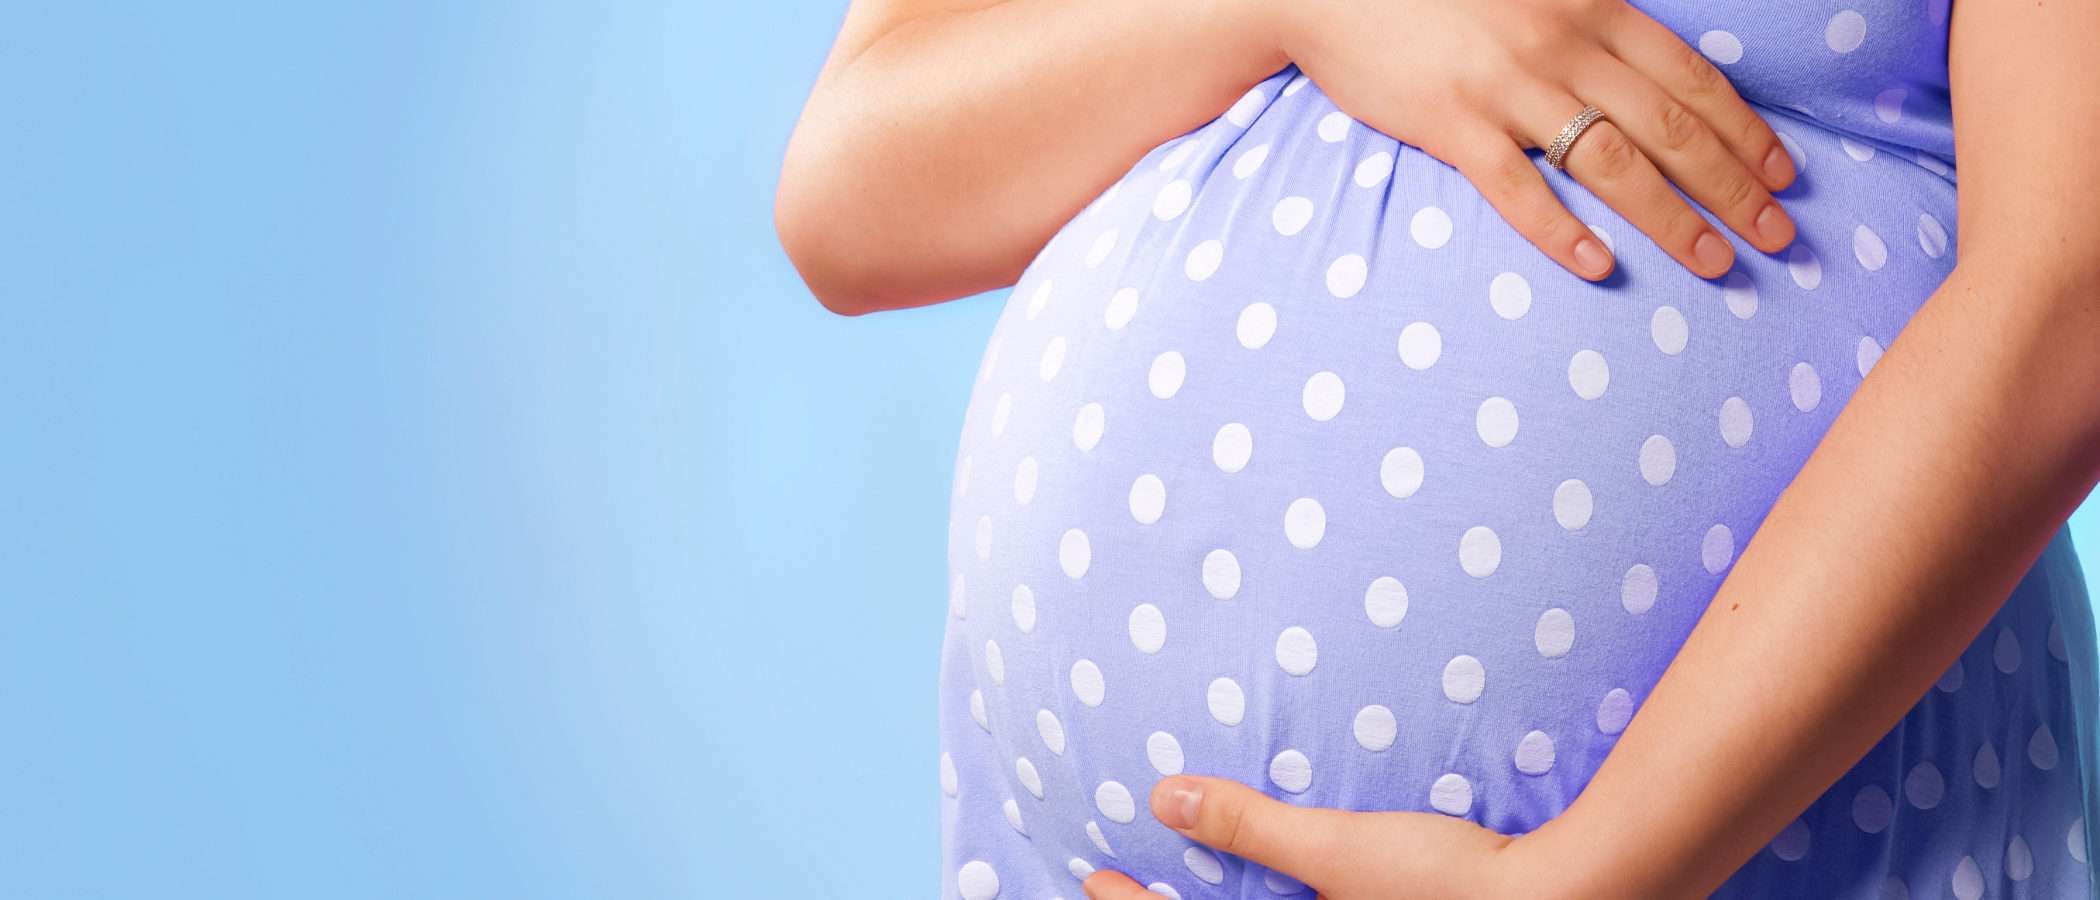 Qué podemos hacer con la ropa premamá después del parto